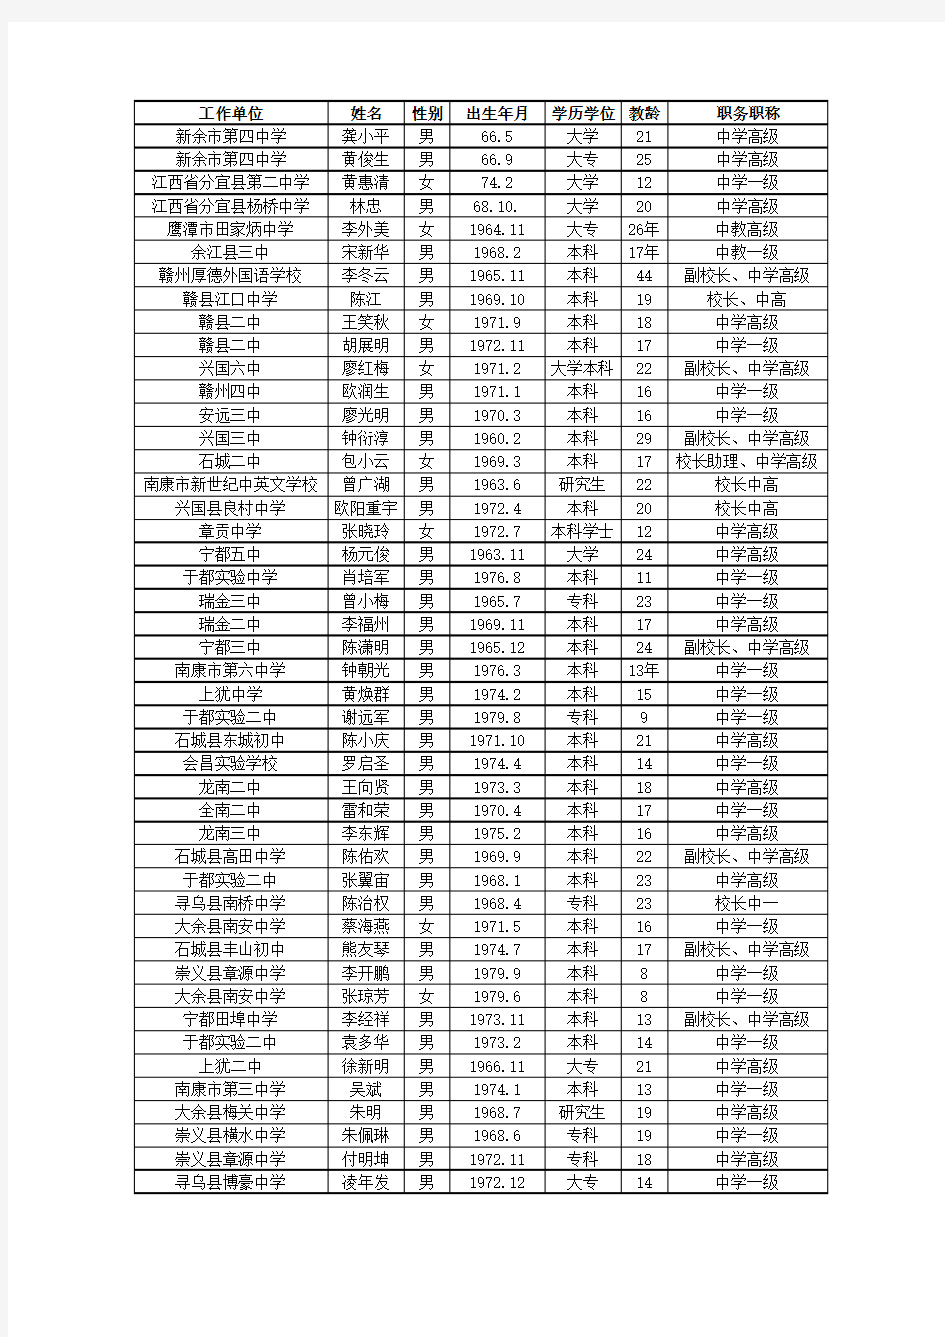 江西省普通初中物理学科骨干教师培养人选名单